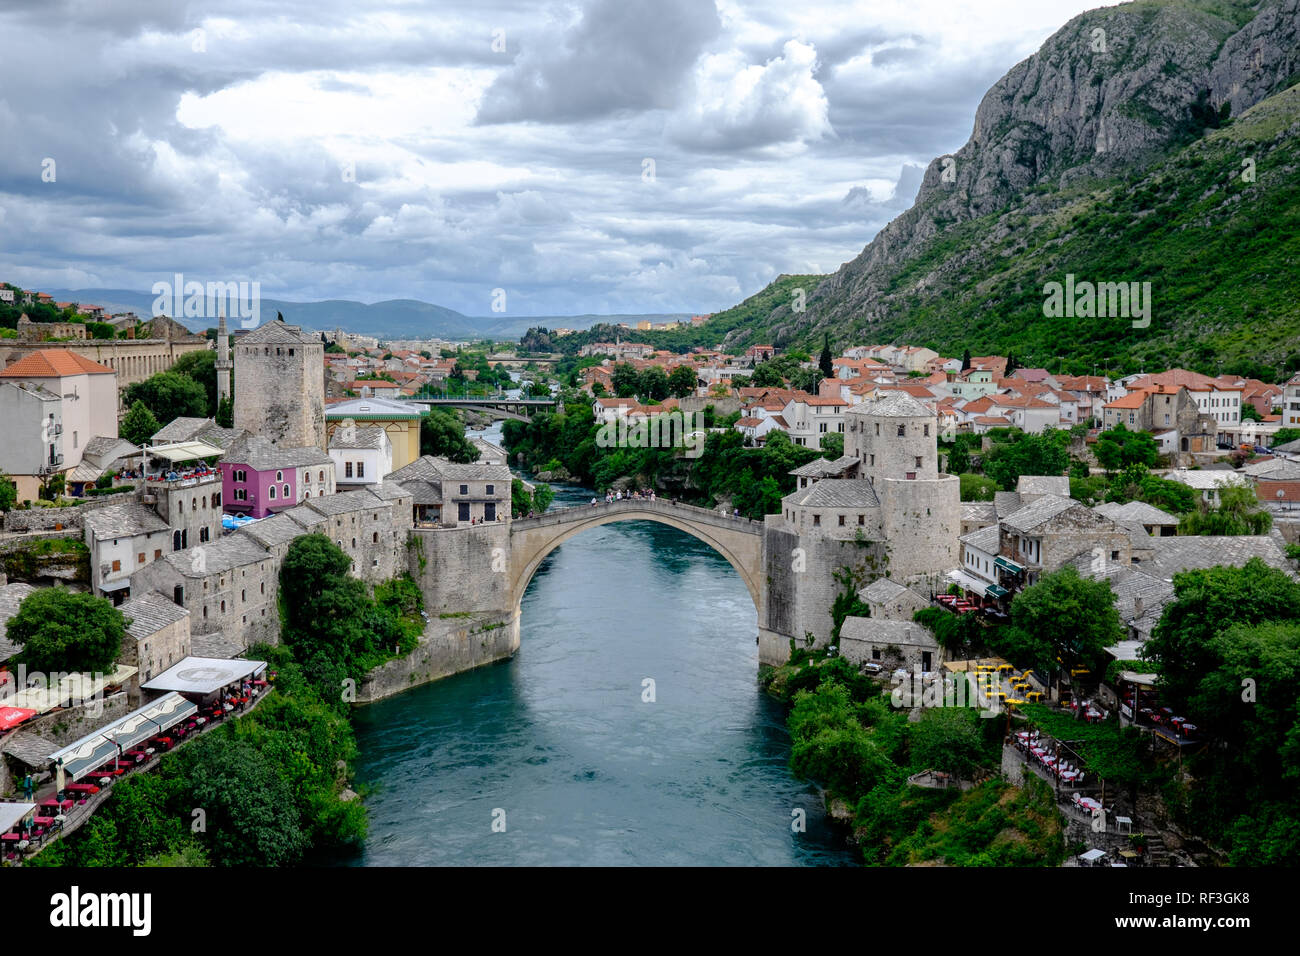 Le majestueux pont Stari Most antique est fier de s'étend sur la Neretva, reliant les deux moitiés de la ville de Mostar depuis des siècles. Banque D'Images